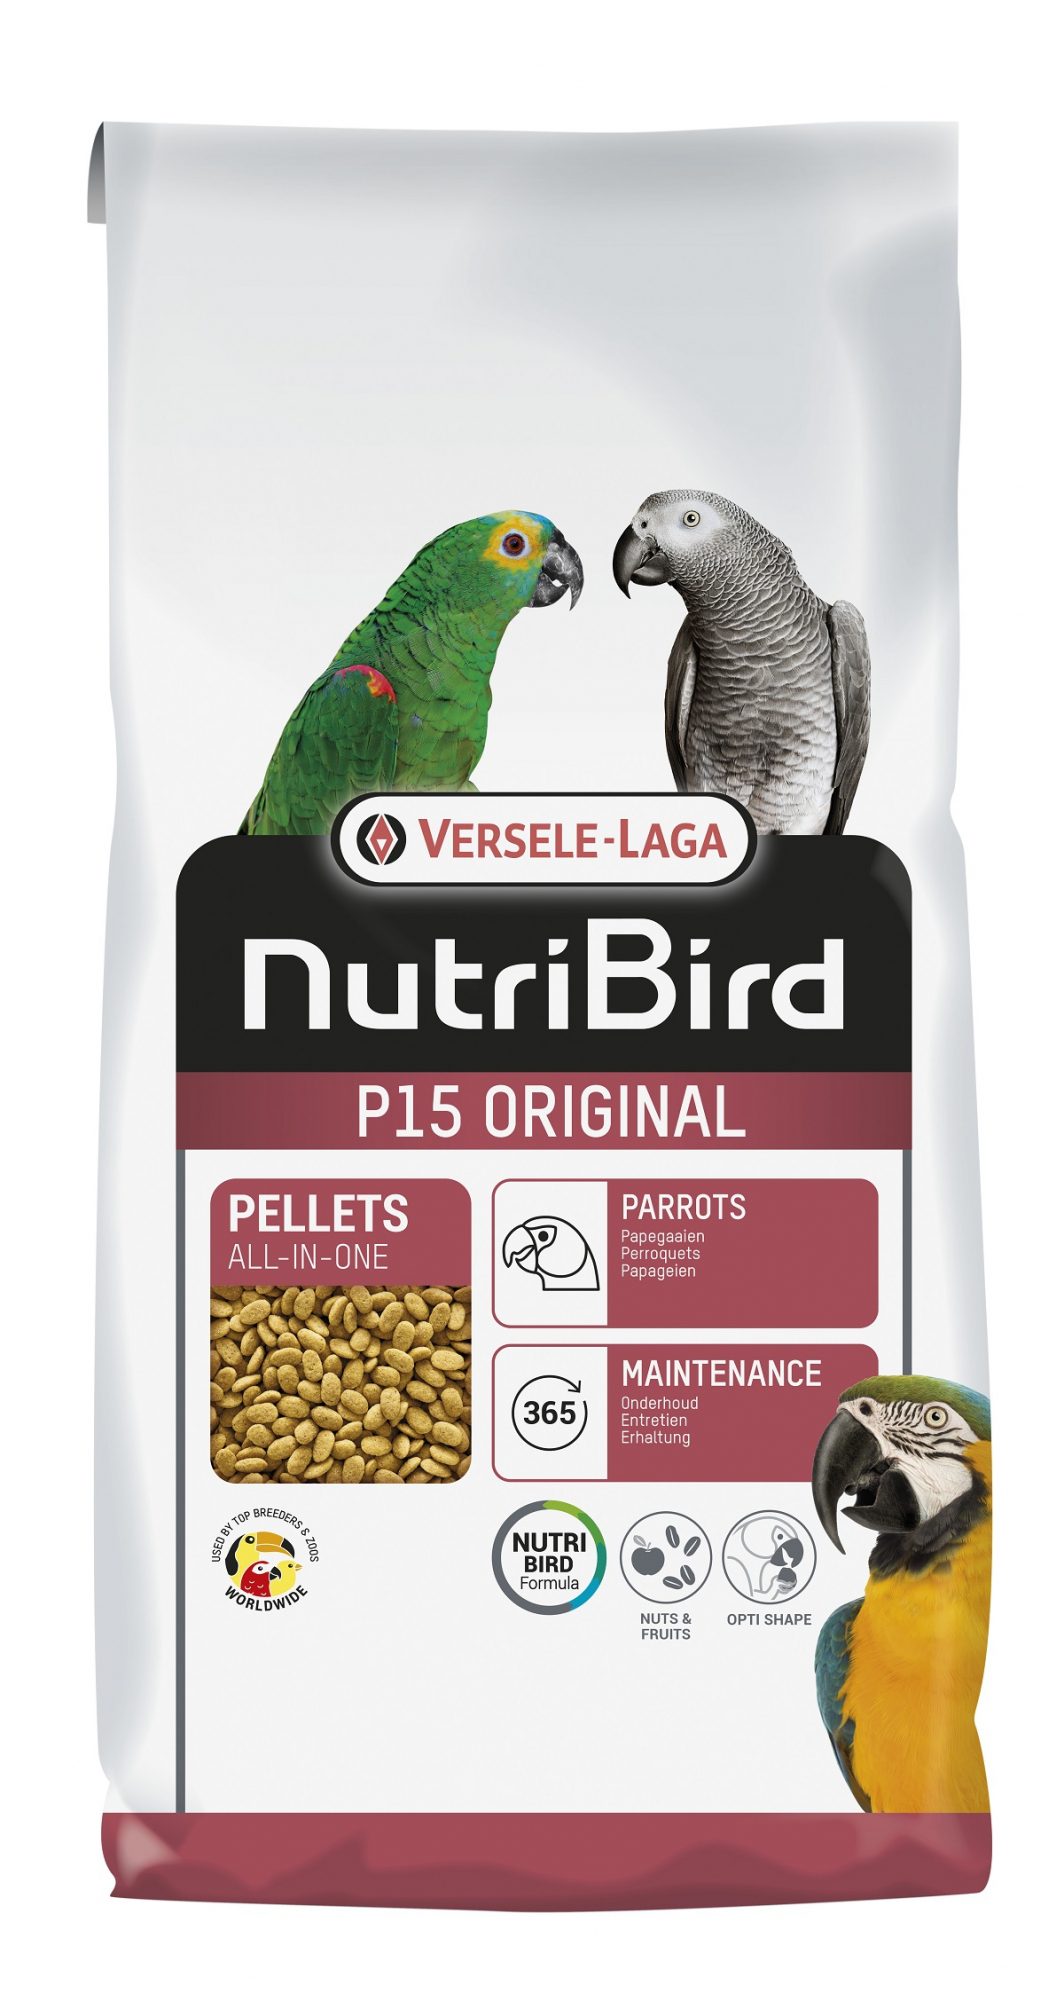 NutriBird P 15 Original compleetvoer voor papegaaien